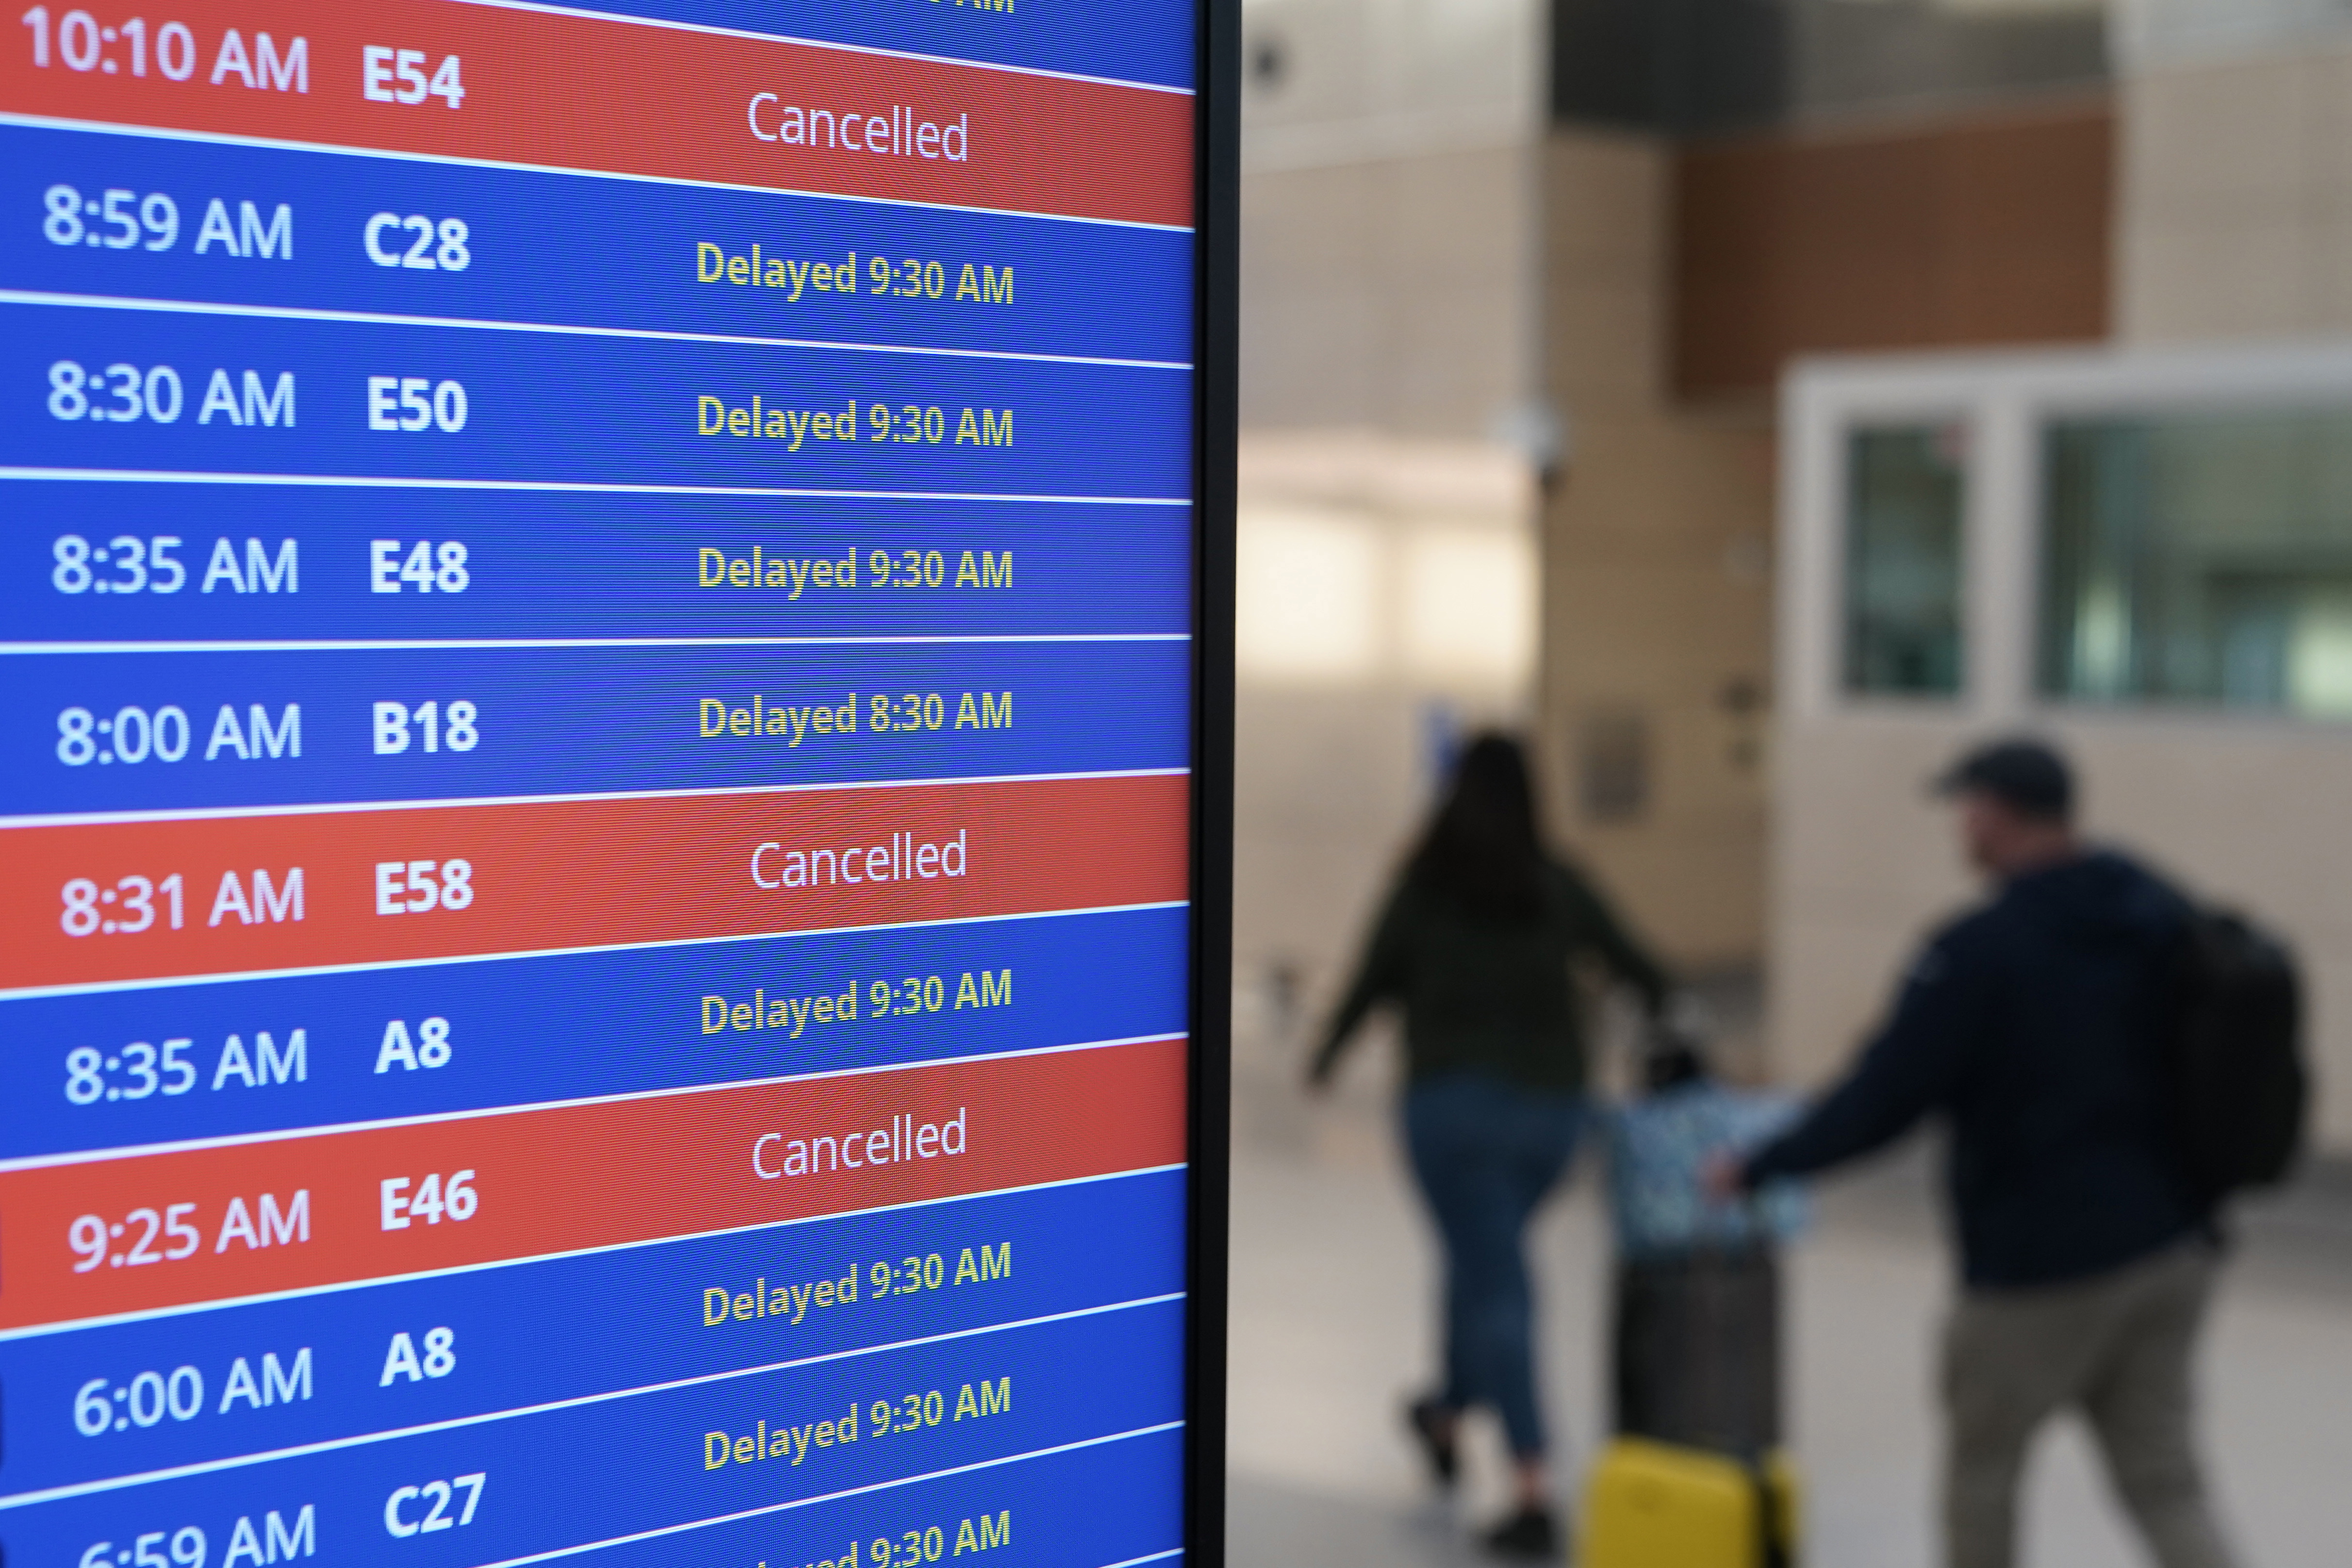 Los viajeros caminan mientras un panel de video muestra retrasos y cancelaciones de vuelos en el Aeropuerto Nacional Ronald Reagan de Washington en Arlington, Virginia, el miércoles 11 de enero de 2023.